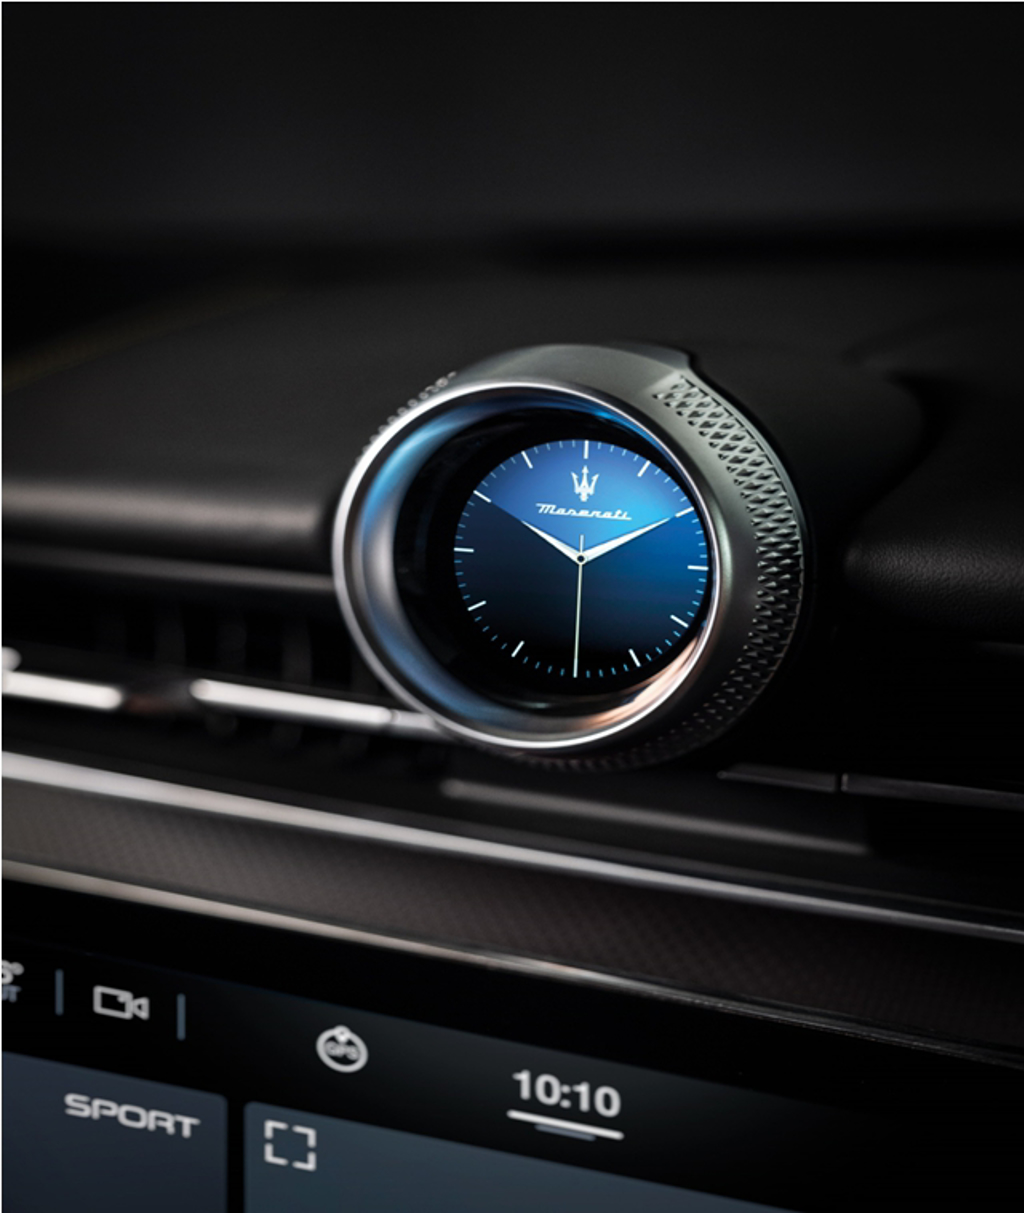 全新進化的智能數位時鐘取代Maserati具識別性的車內石英鐘，提供三種主題風格選擇與G值計、指南針和計時碼表等多功能顯示。 (圖/Modena Motori Taiwan)